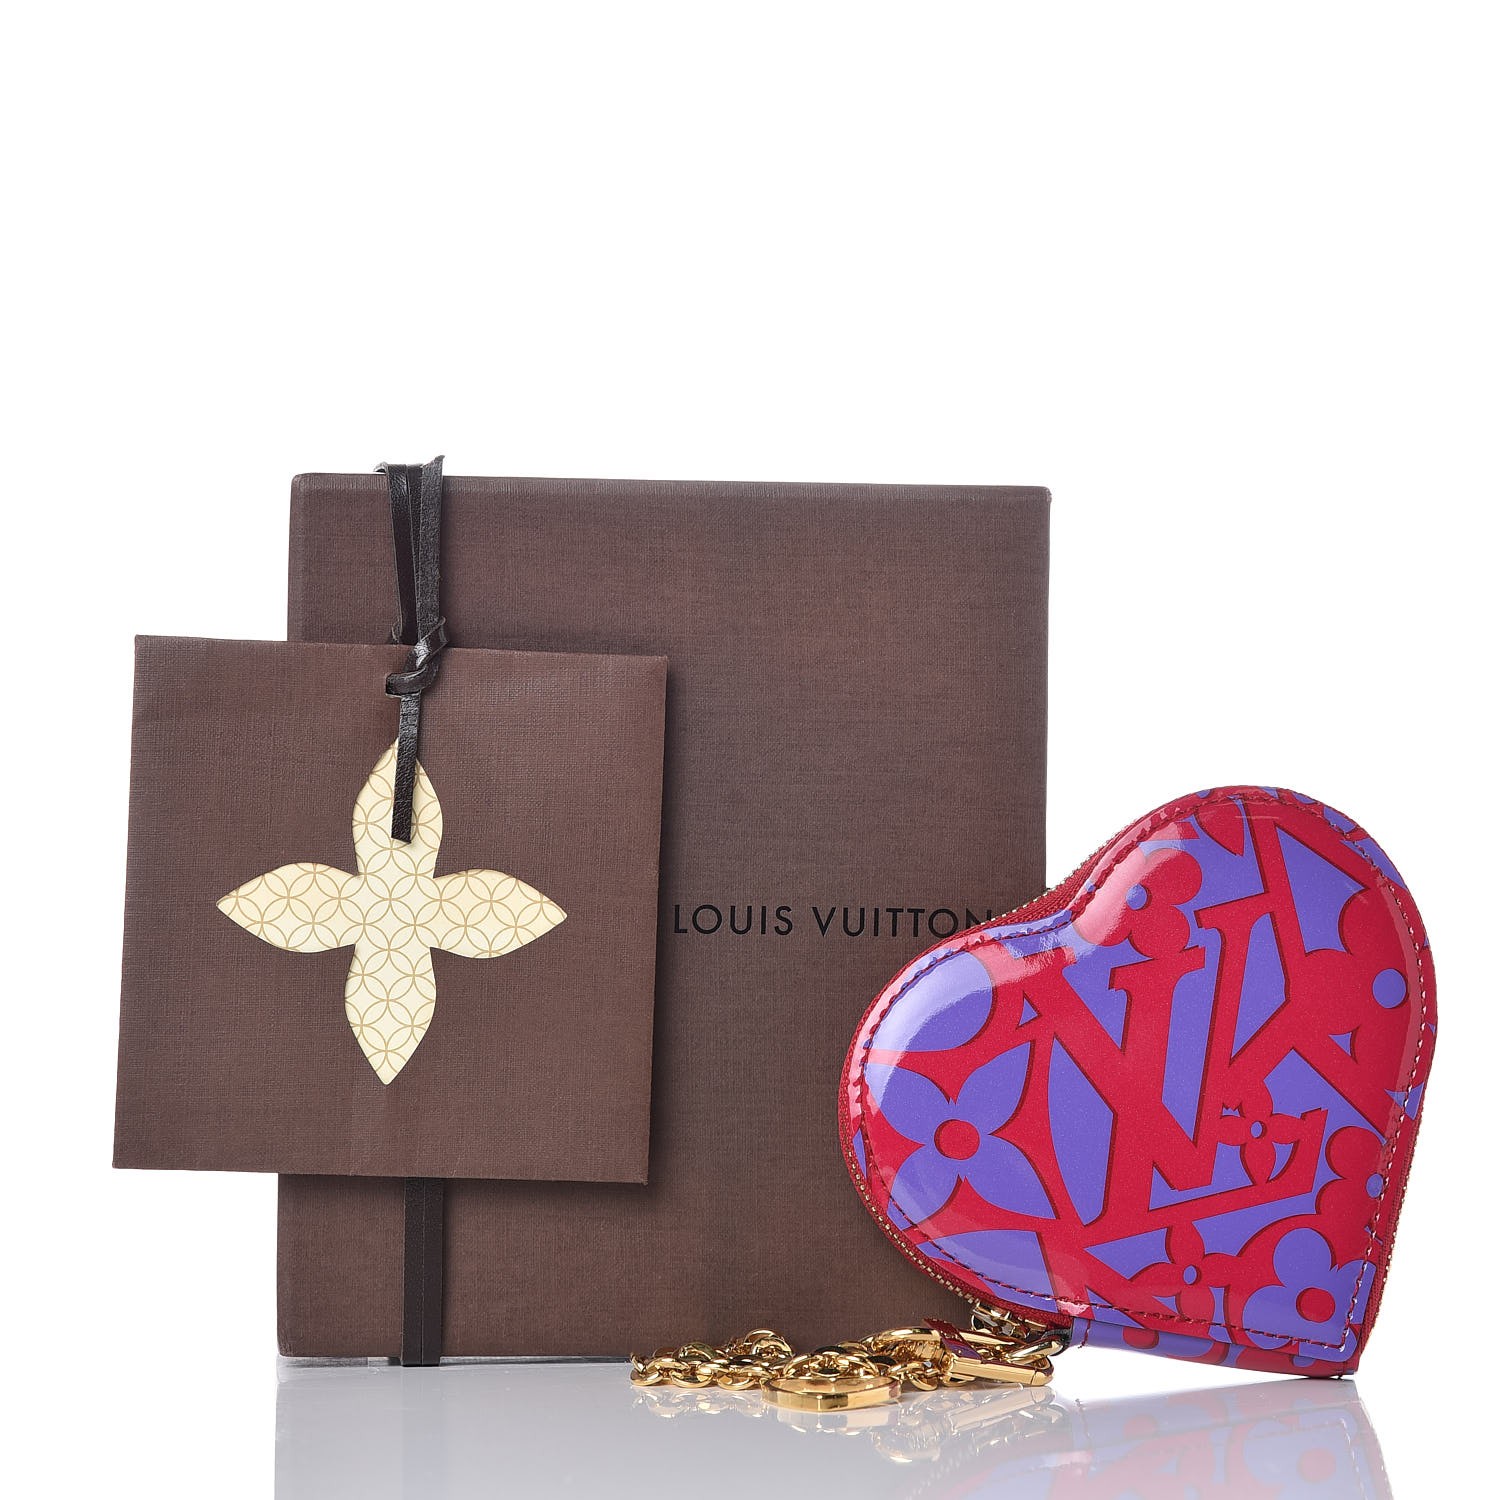 Louis Vuitton Sweet Monogram Heart Hoop Earrings - Gold-Tone Metal